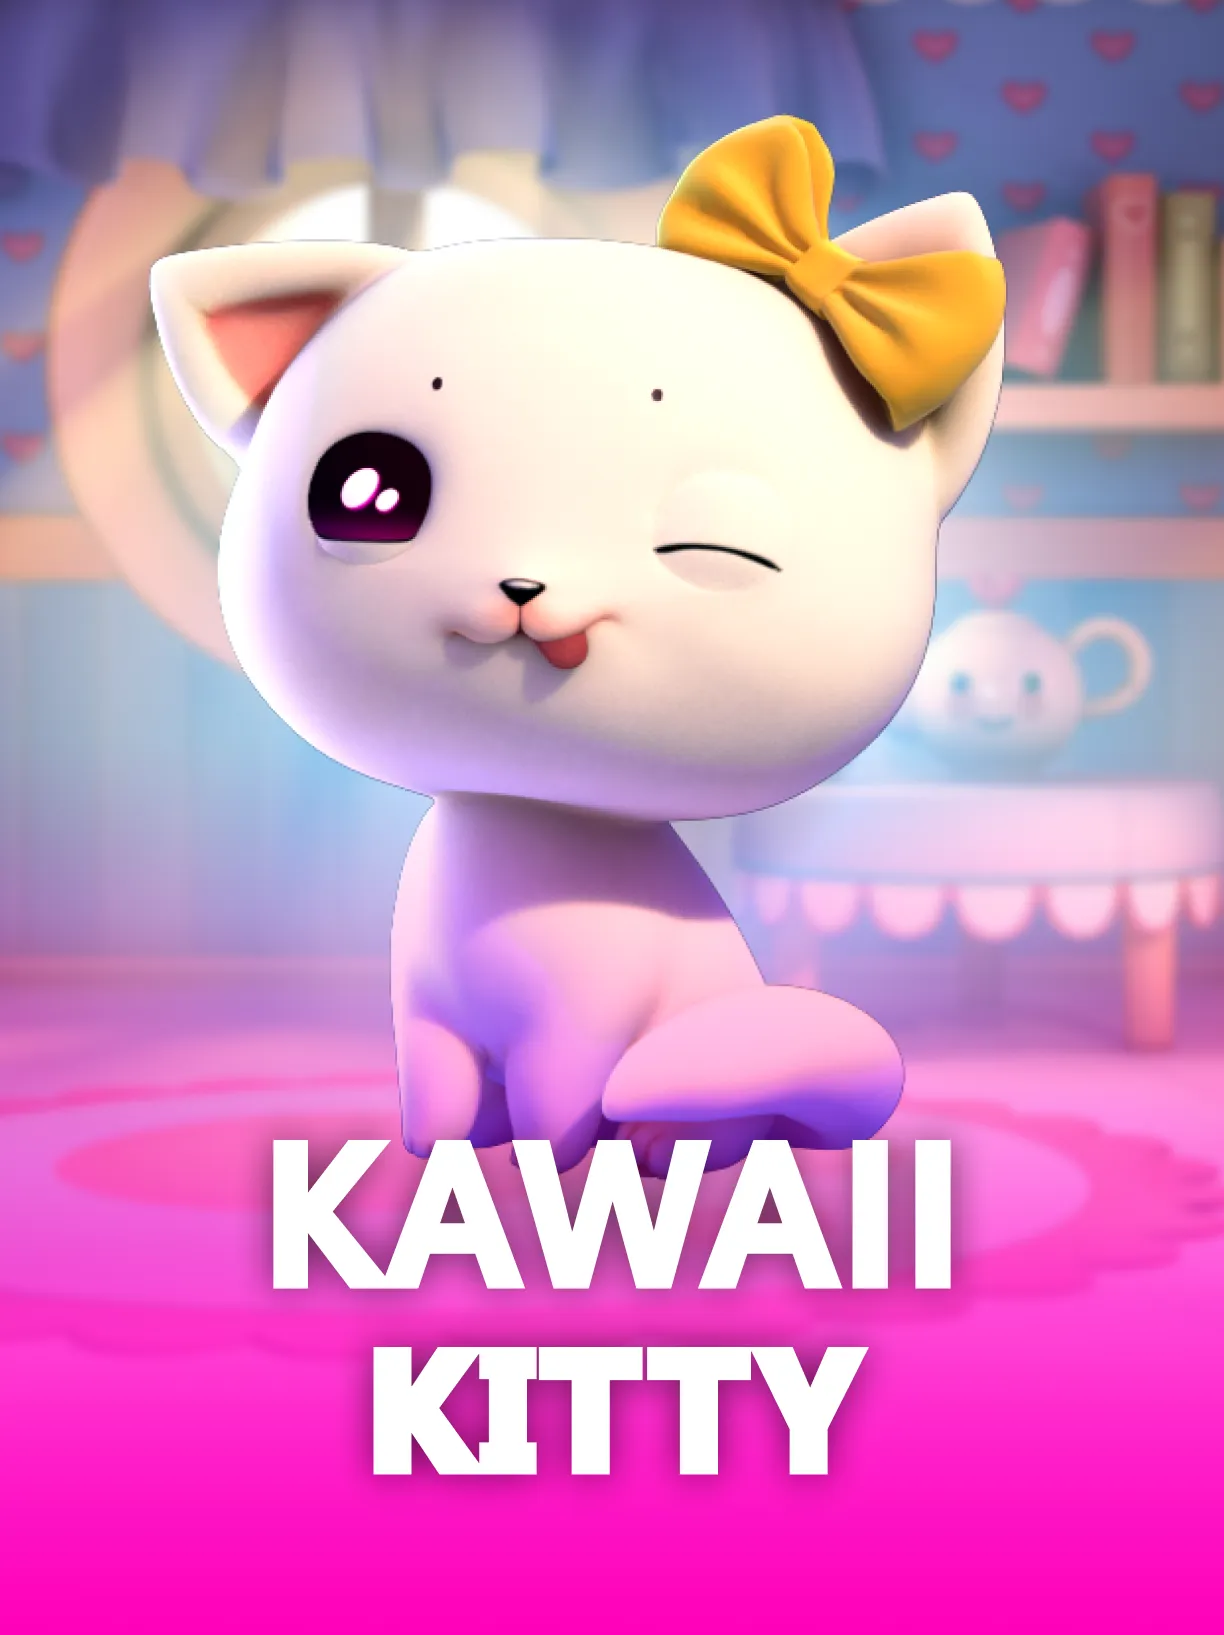 Kawaii Kitty - Betsoft Online Casino Games